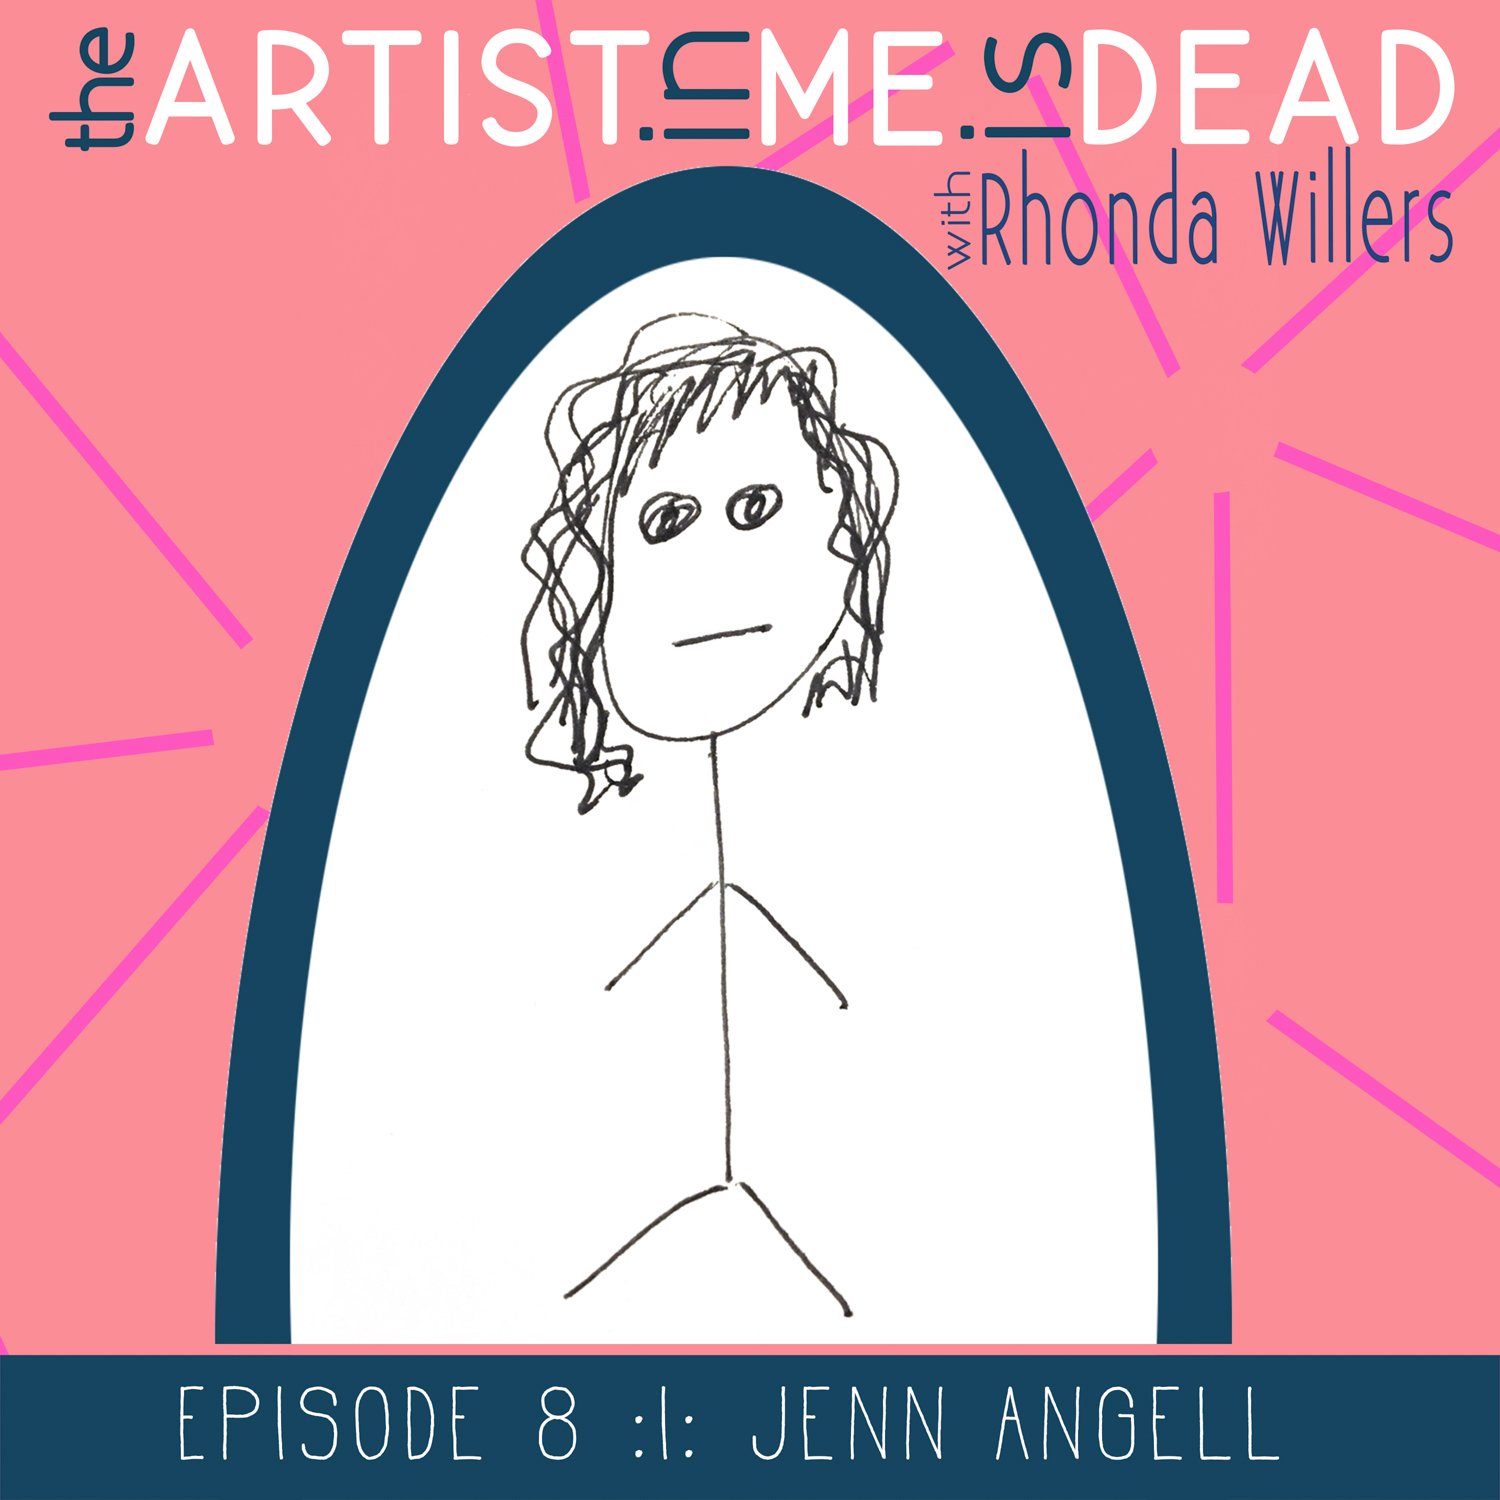 01_episode8_jenn_angell_the-artist-in-me-is-dead-podcast_season1.jpeg